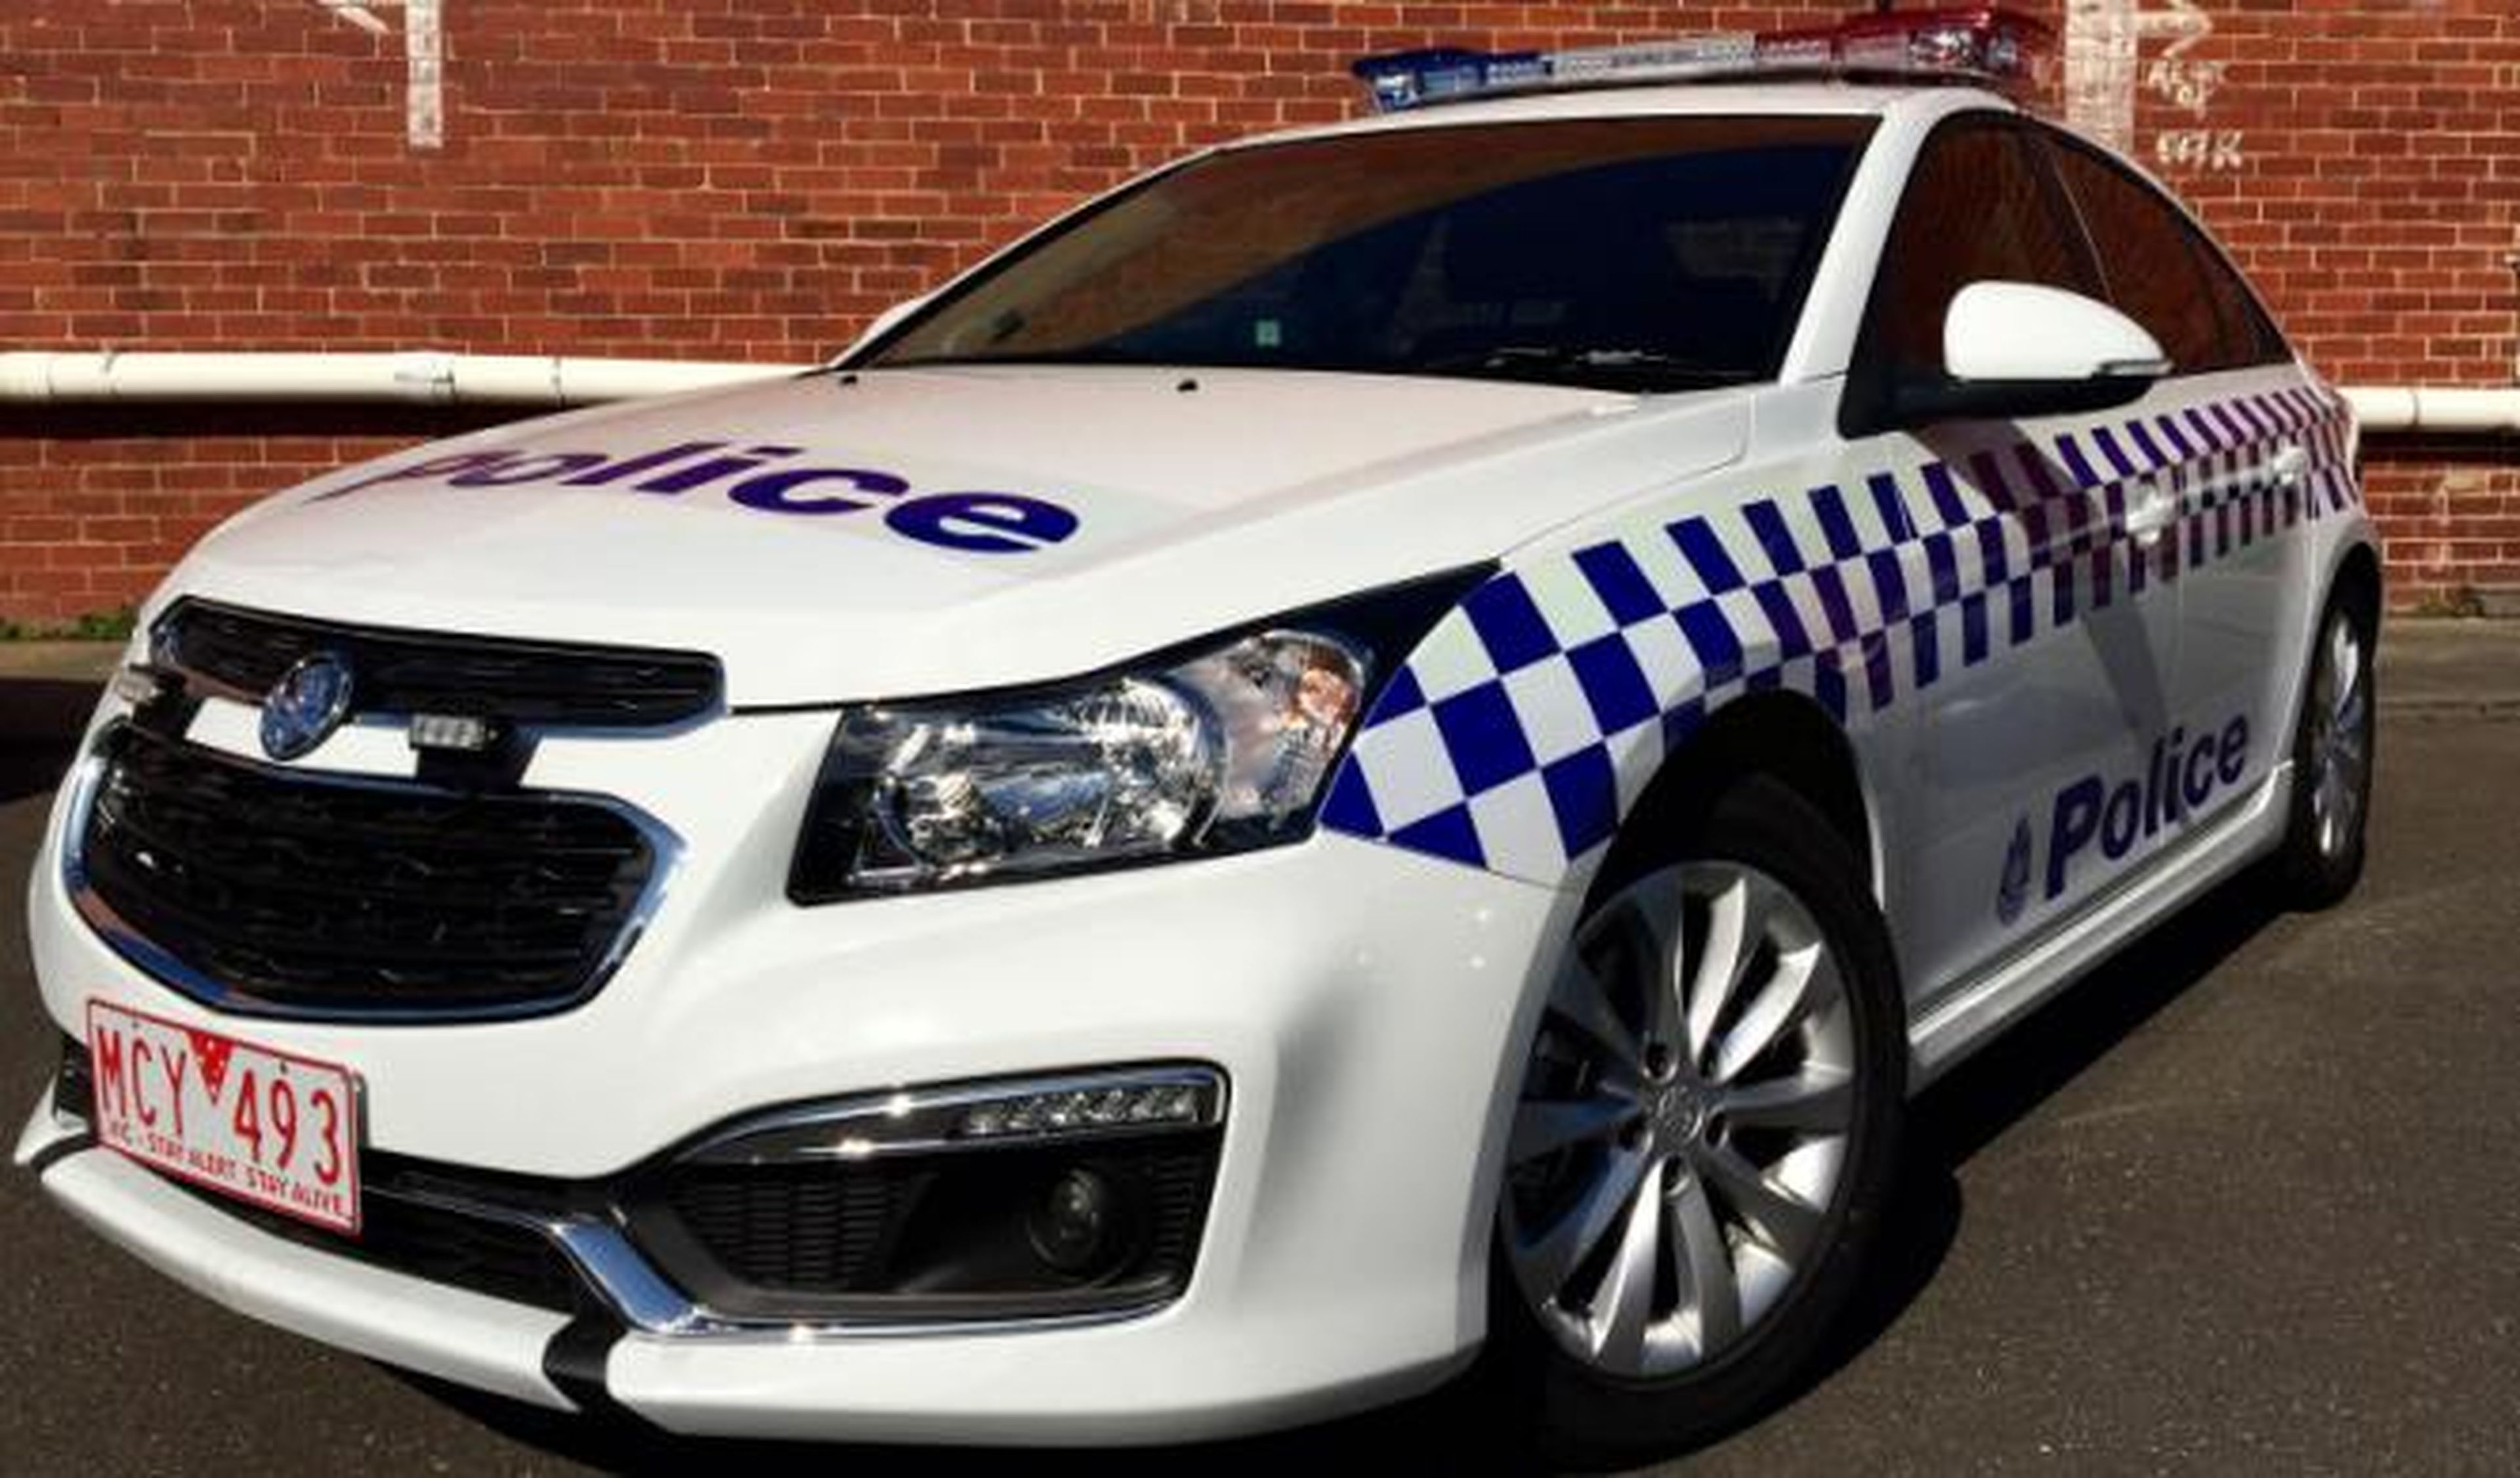 Nuevos Chevrolet Cruze para la Policía australiana